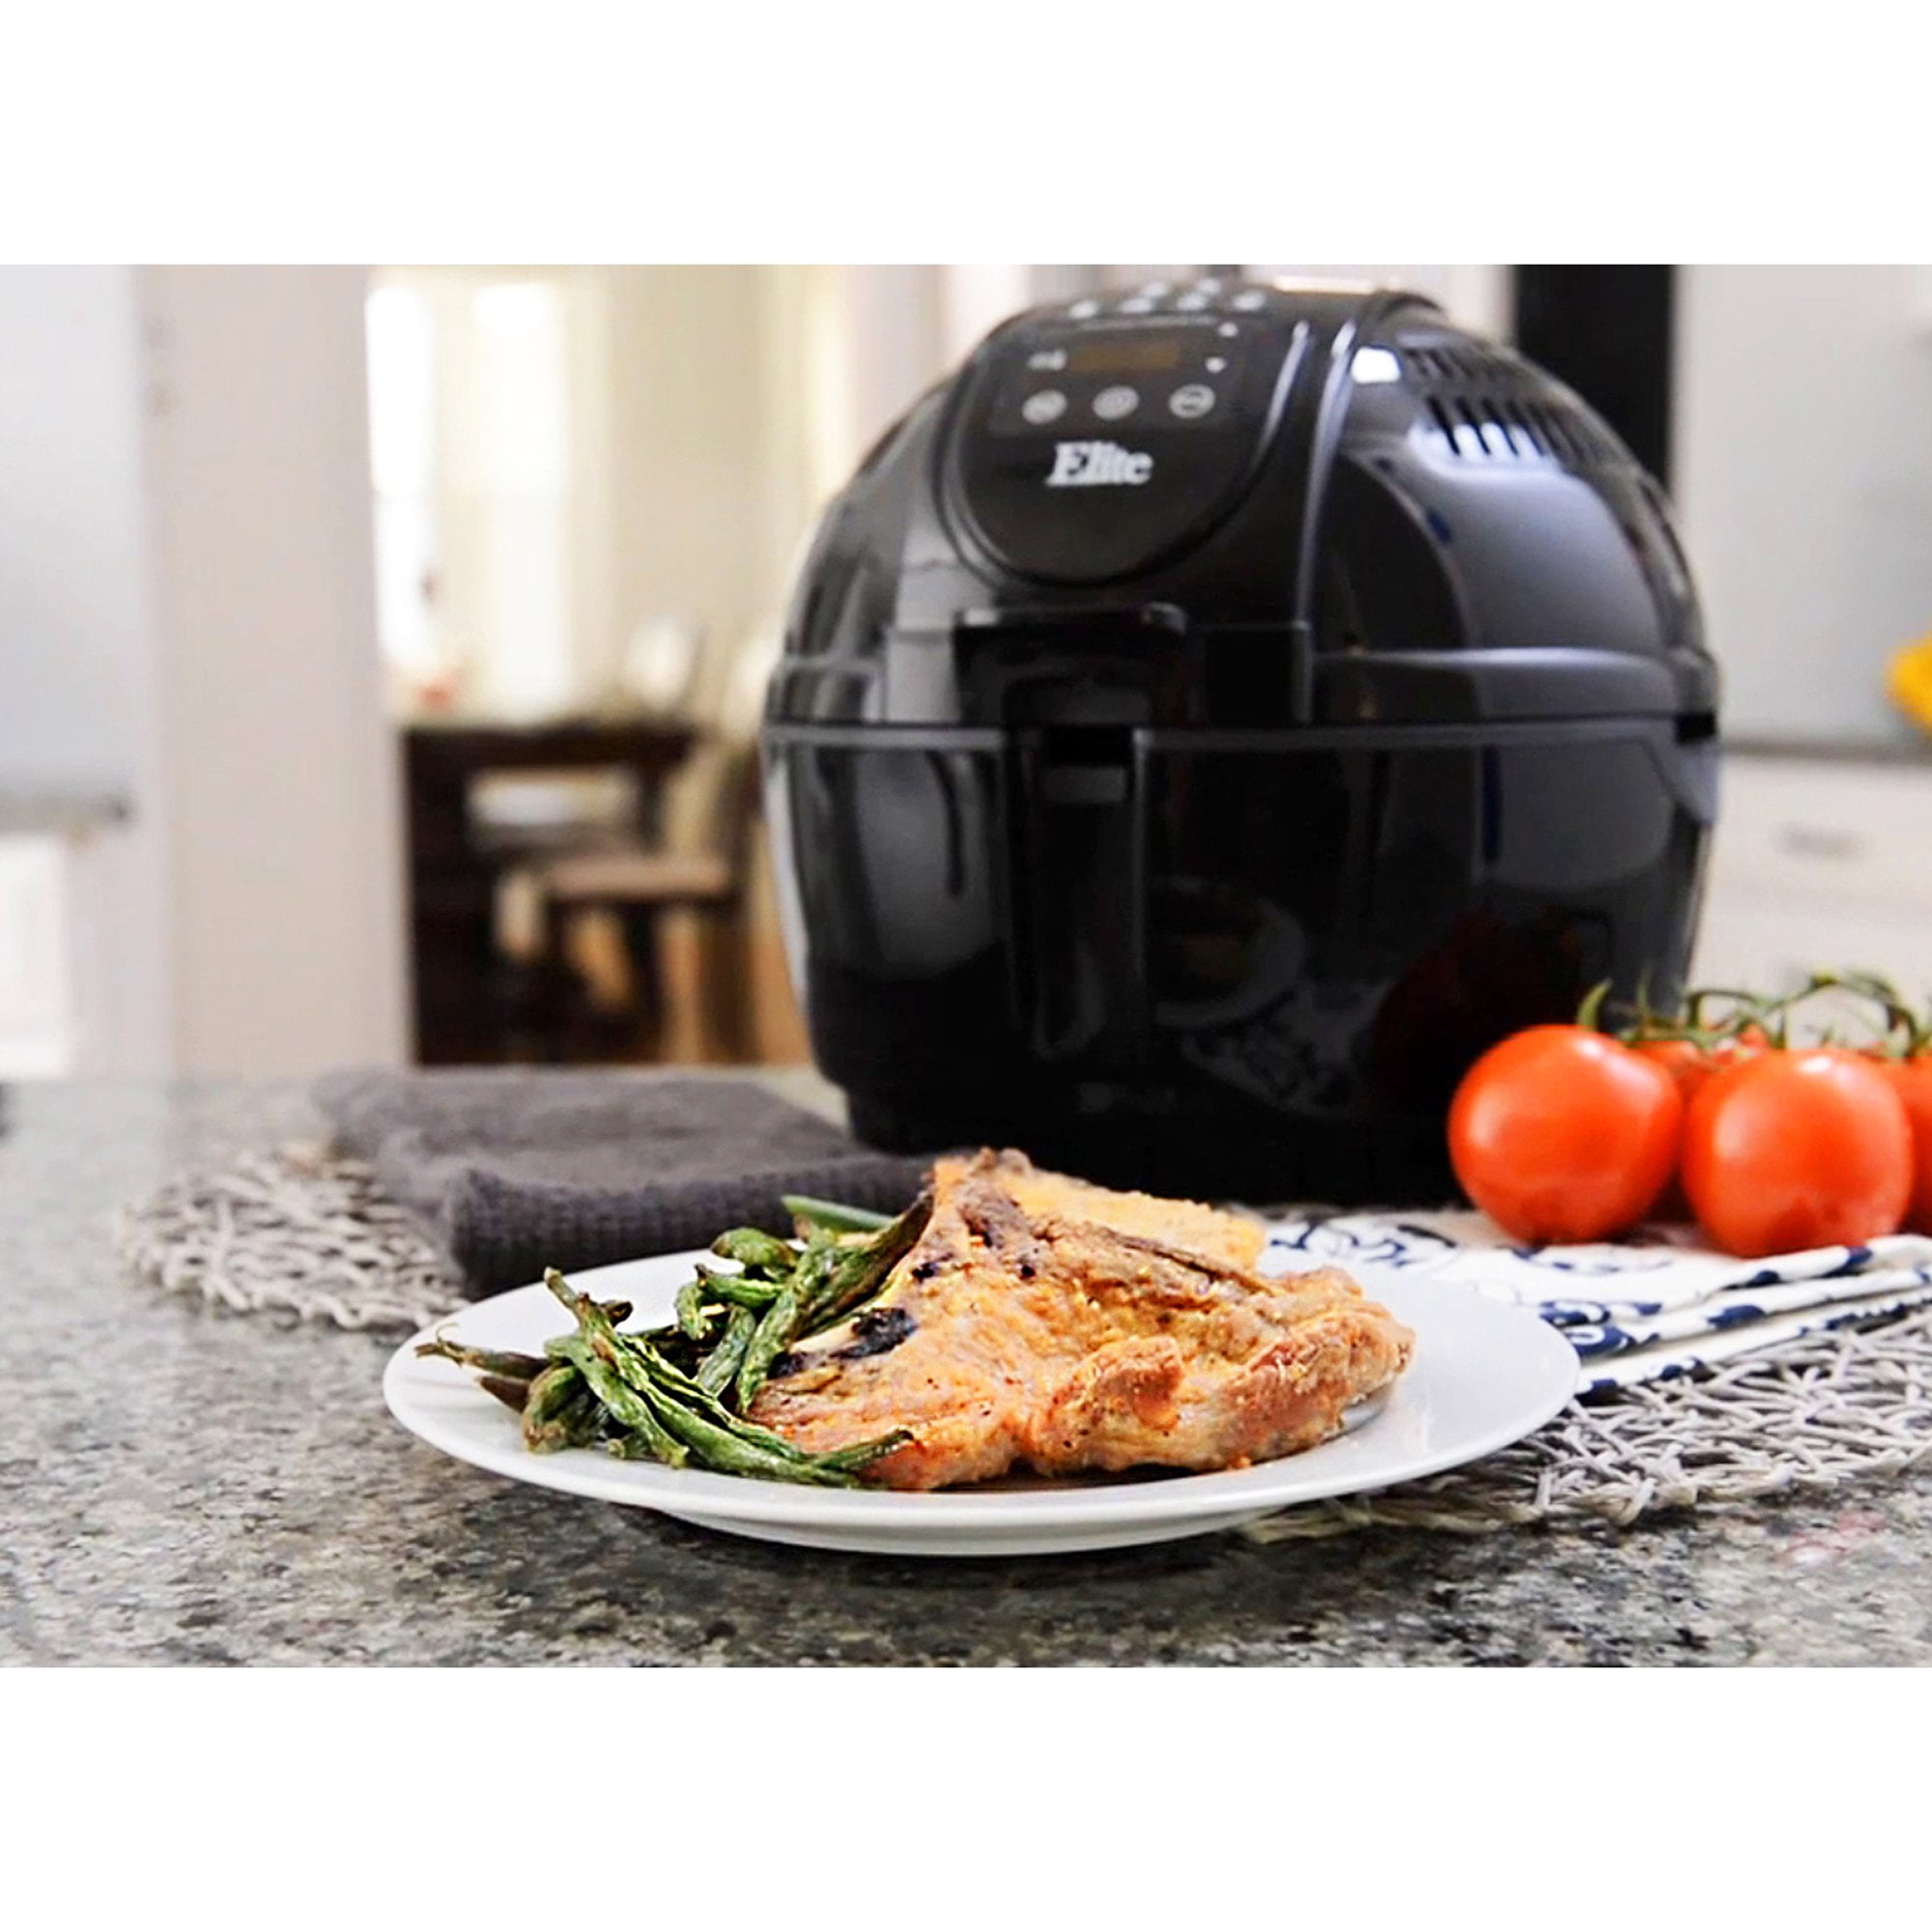 Digital Air Fryer Elite Platinum 3.5 qt Black Home Kitchen Appliance Machine New 717056123347  eBay